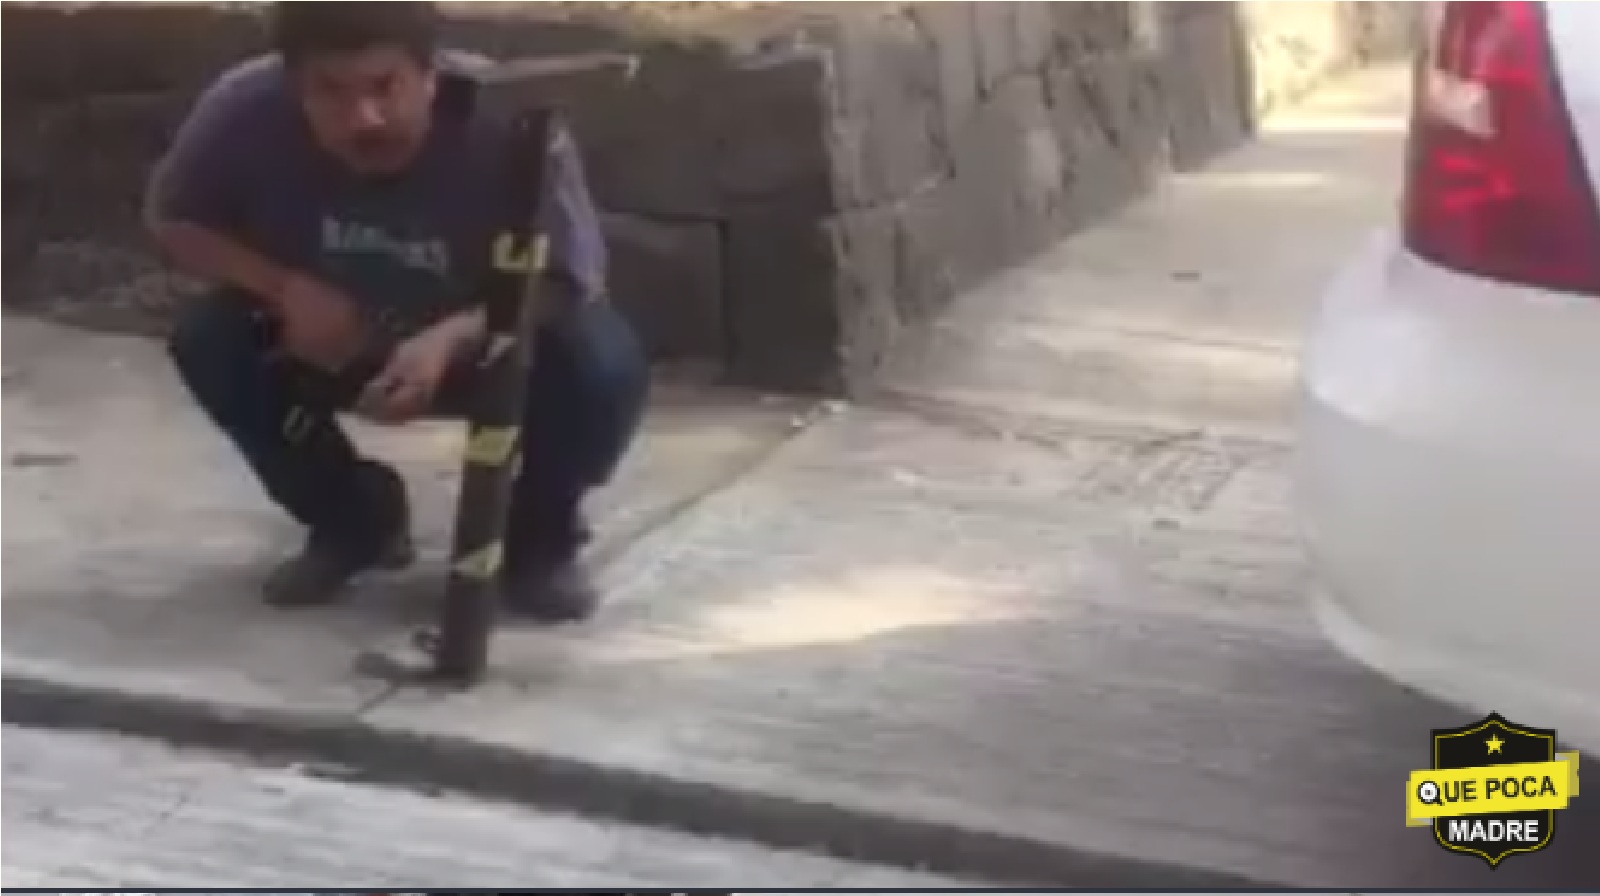 Video : Captan a #LordBanqueta, sujeto que usa la acera como su Garage